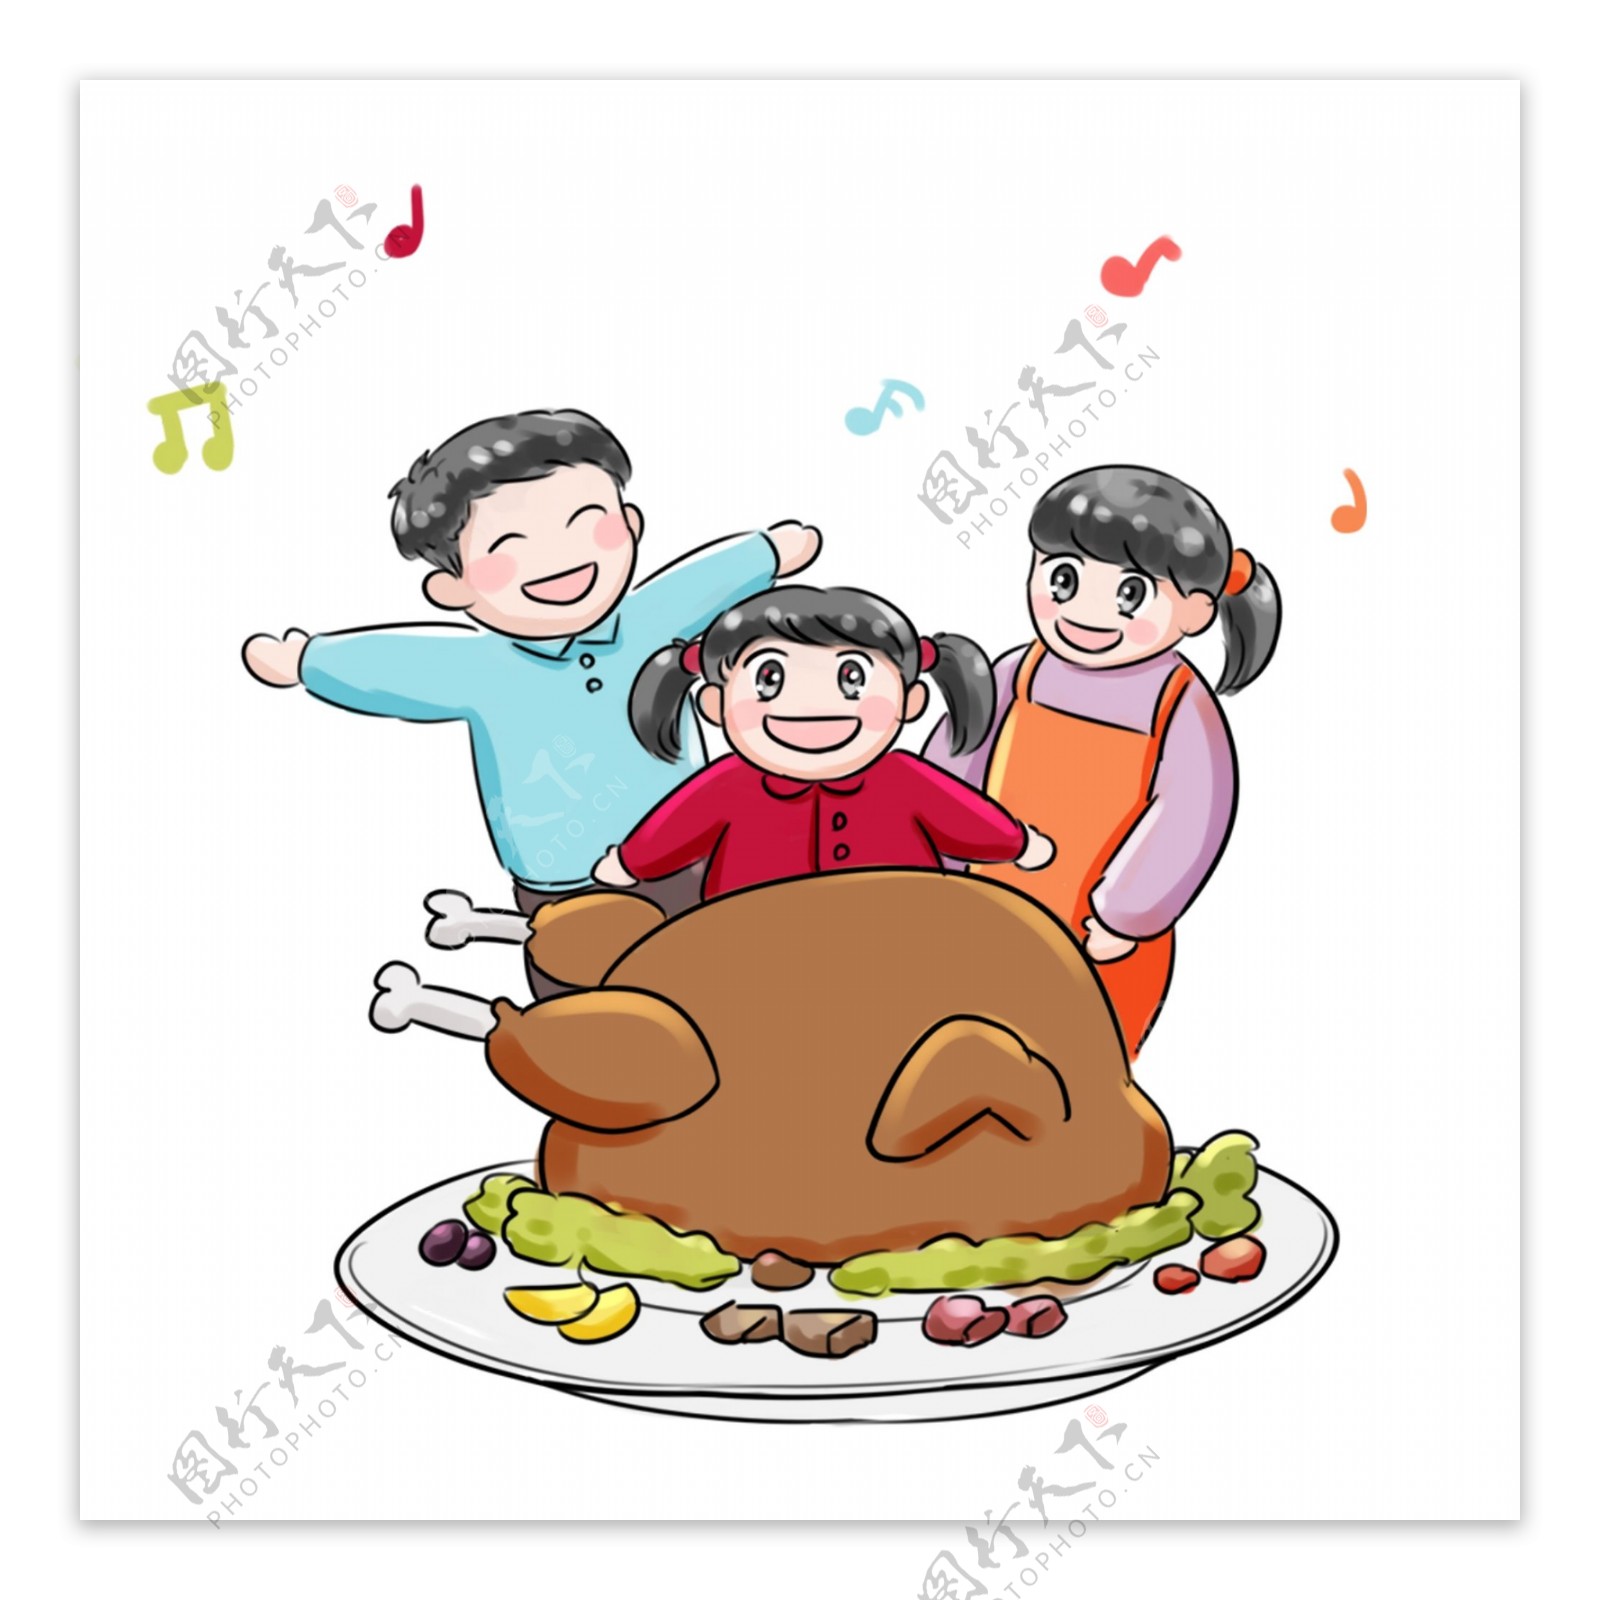 感恩节系列卡通手绘Q版吃火鸡